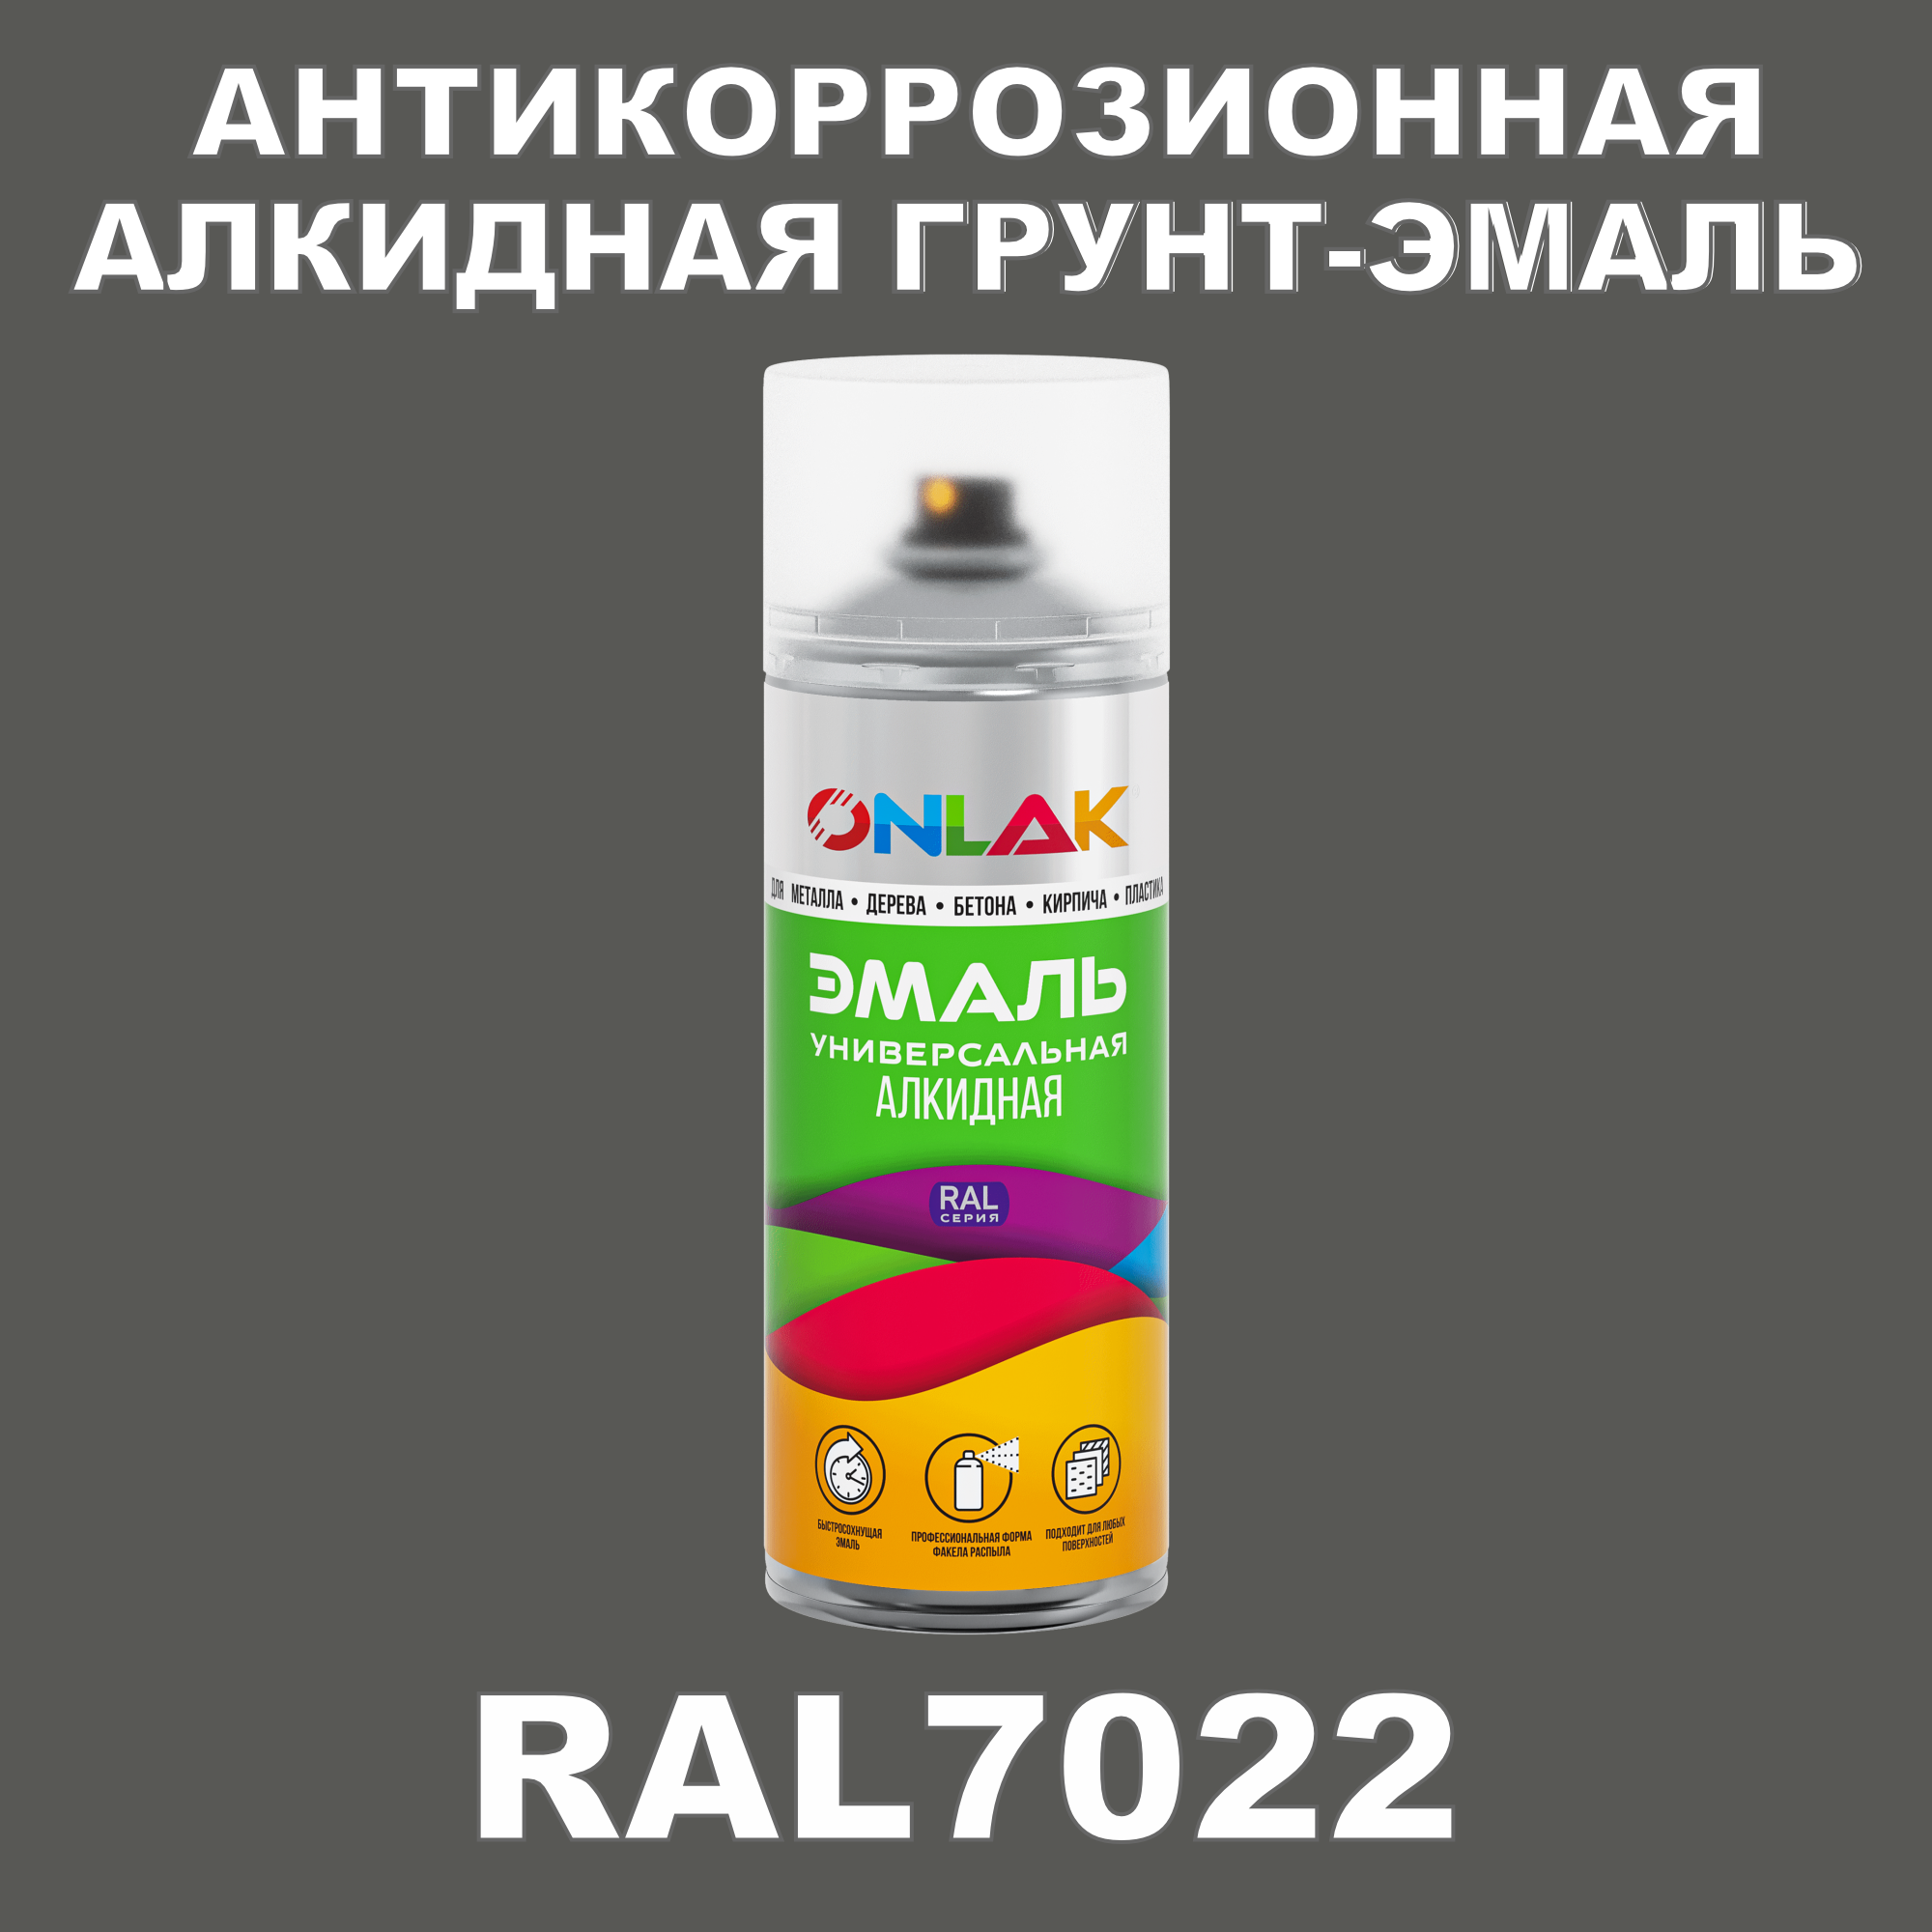 Антикоррозионная грунт-эмаль ONLAK RAL7022 полуматовая для металла и защиты от ржавчины